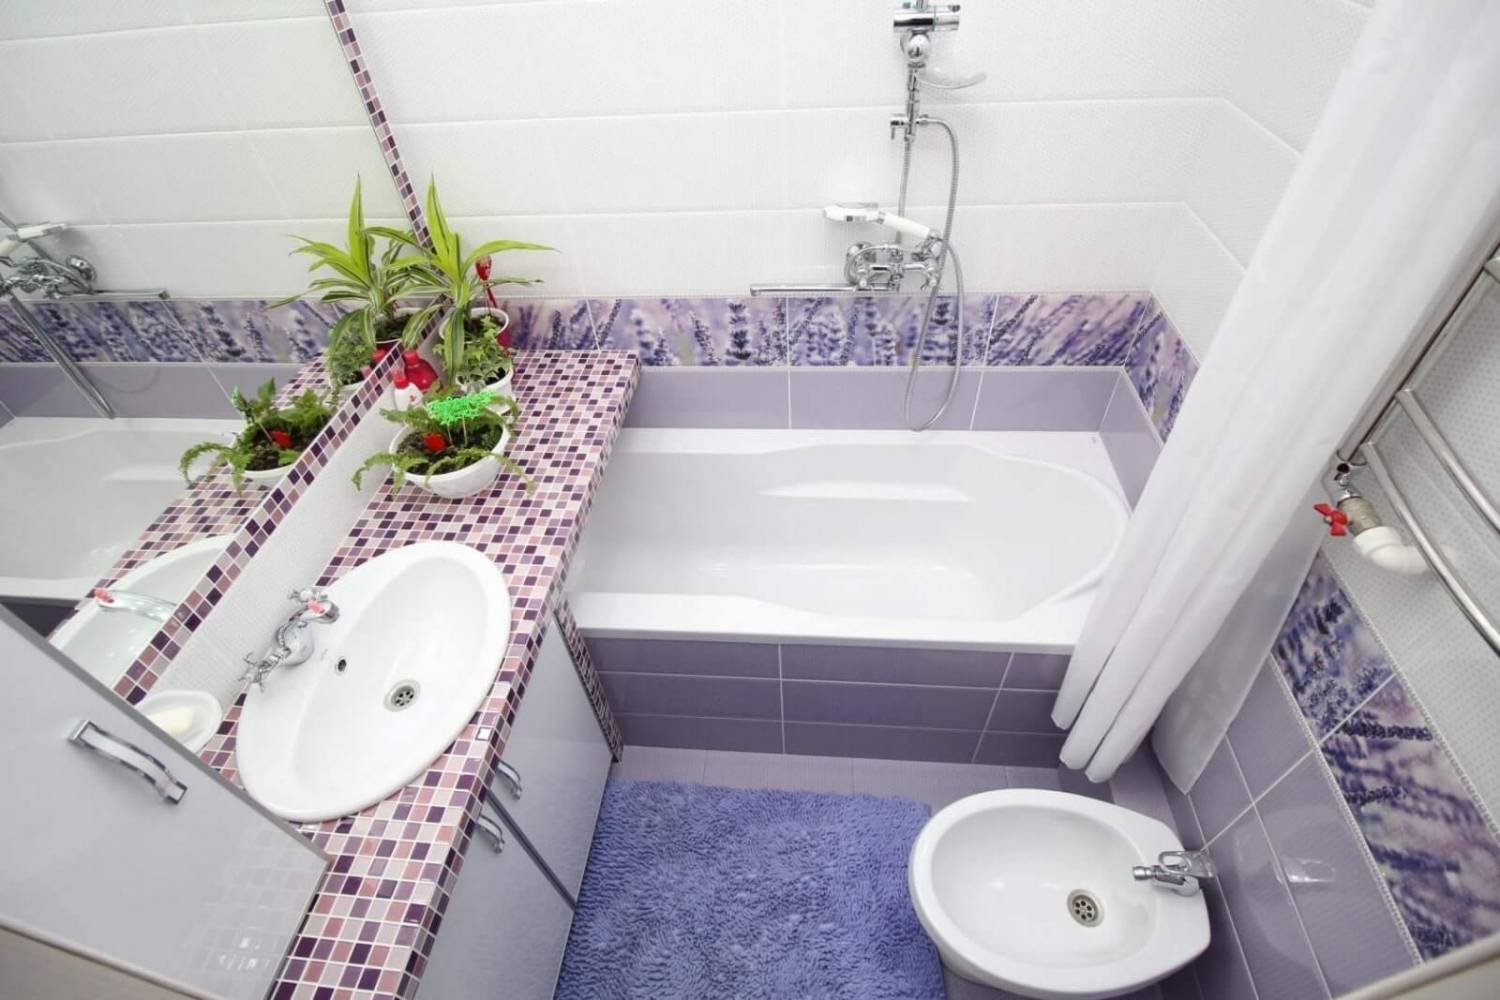 Ремонт в маленькой ванной комнате. ремонт пола, стен и потолка. пошаговая инструкция - строительство и ремонт